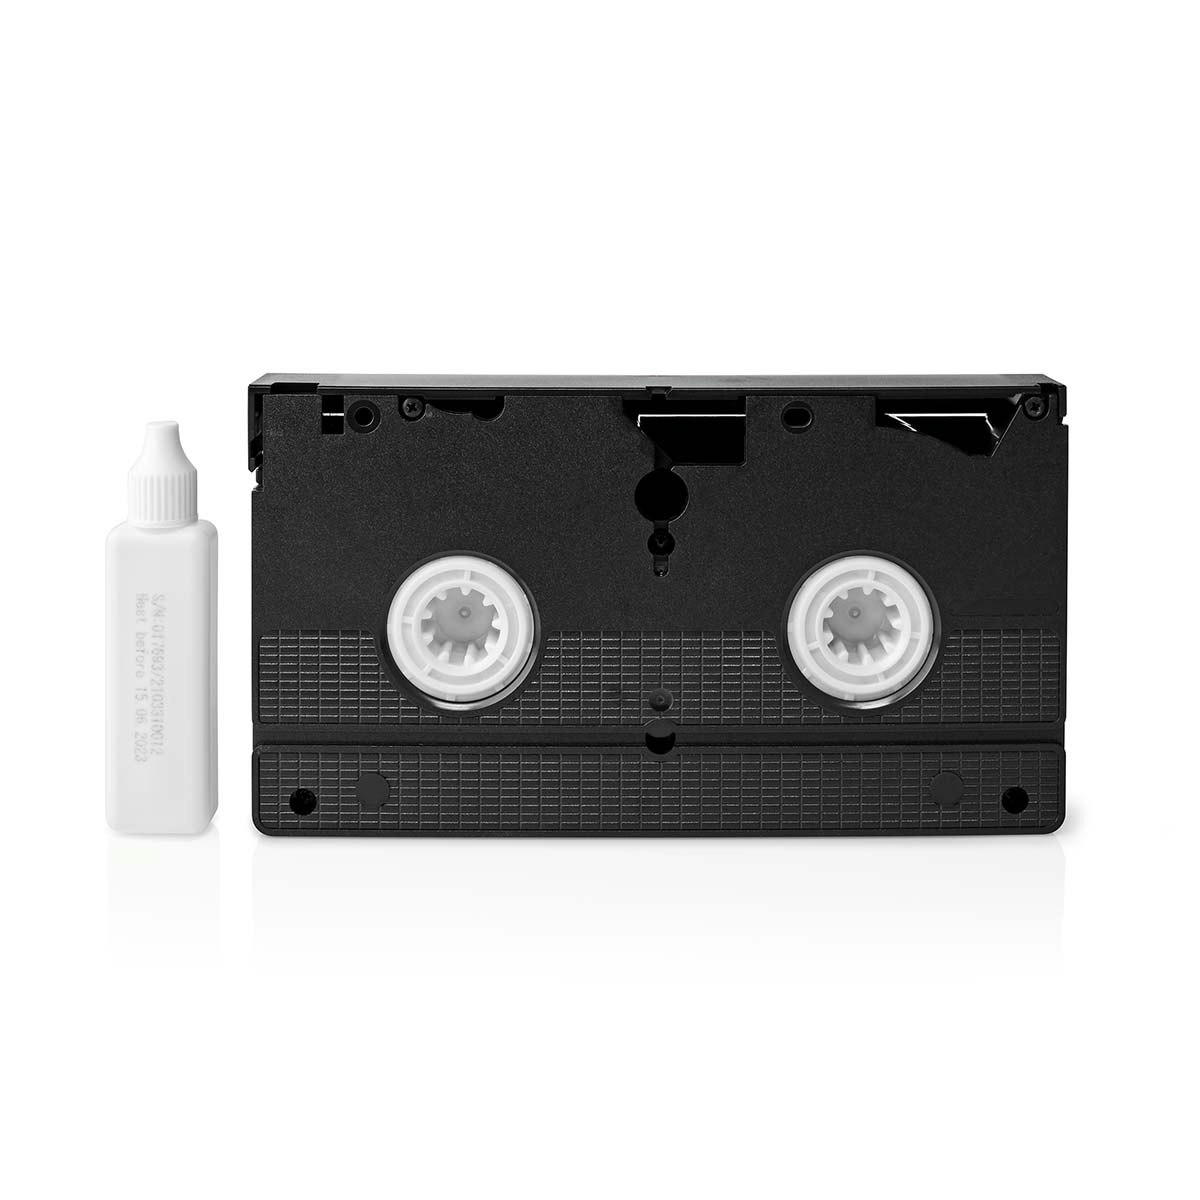 VHS rensekassett med 20ml renseveske